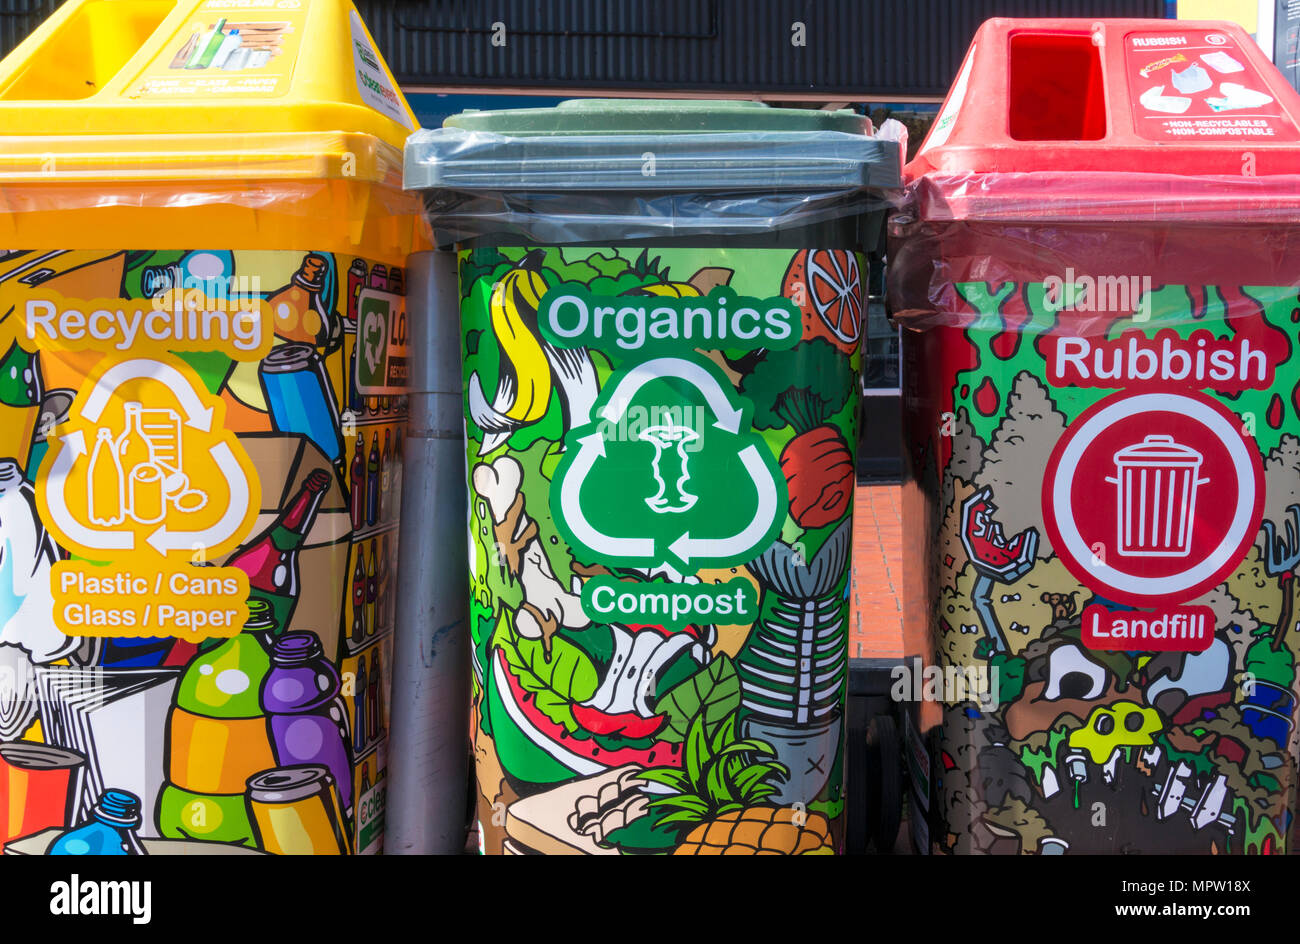 Farbenfroh eingerichtete helle Auffällige recycling Bins in einer Zeile in einem Stadtzentrum Stockfoto